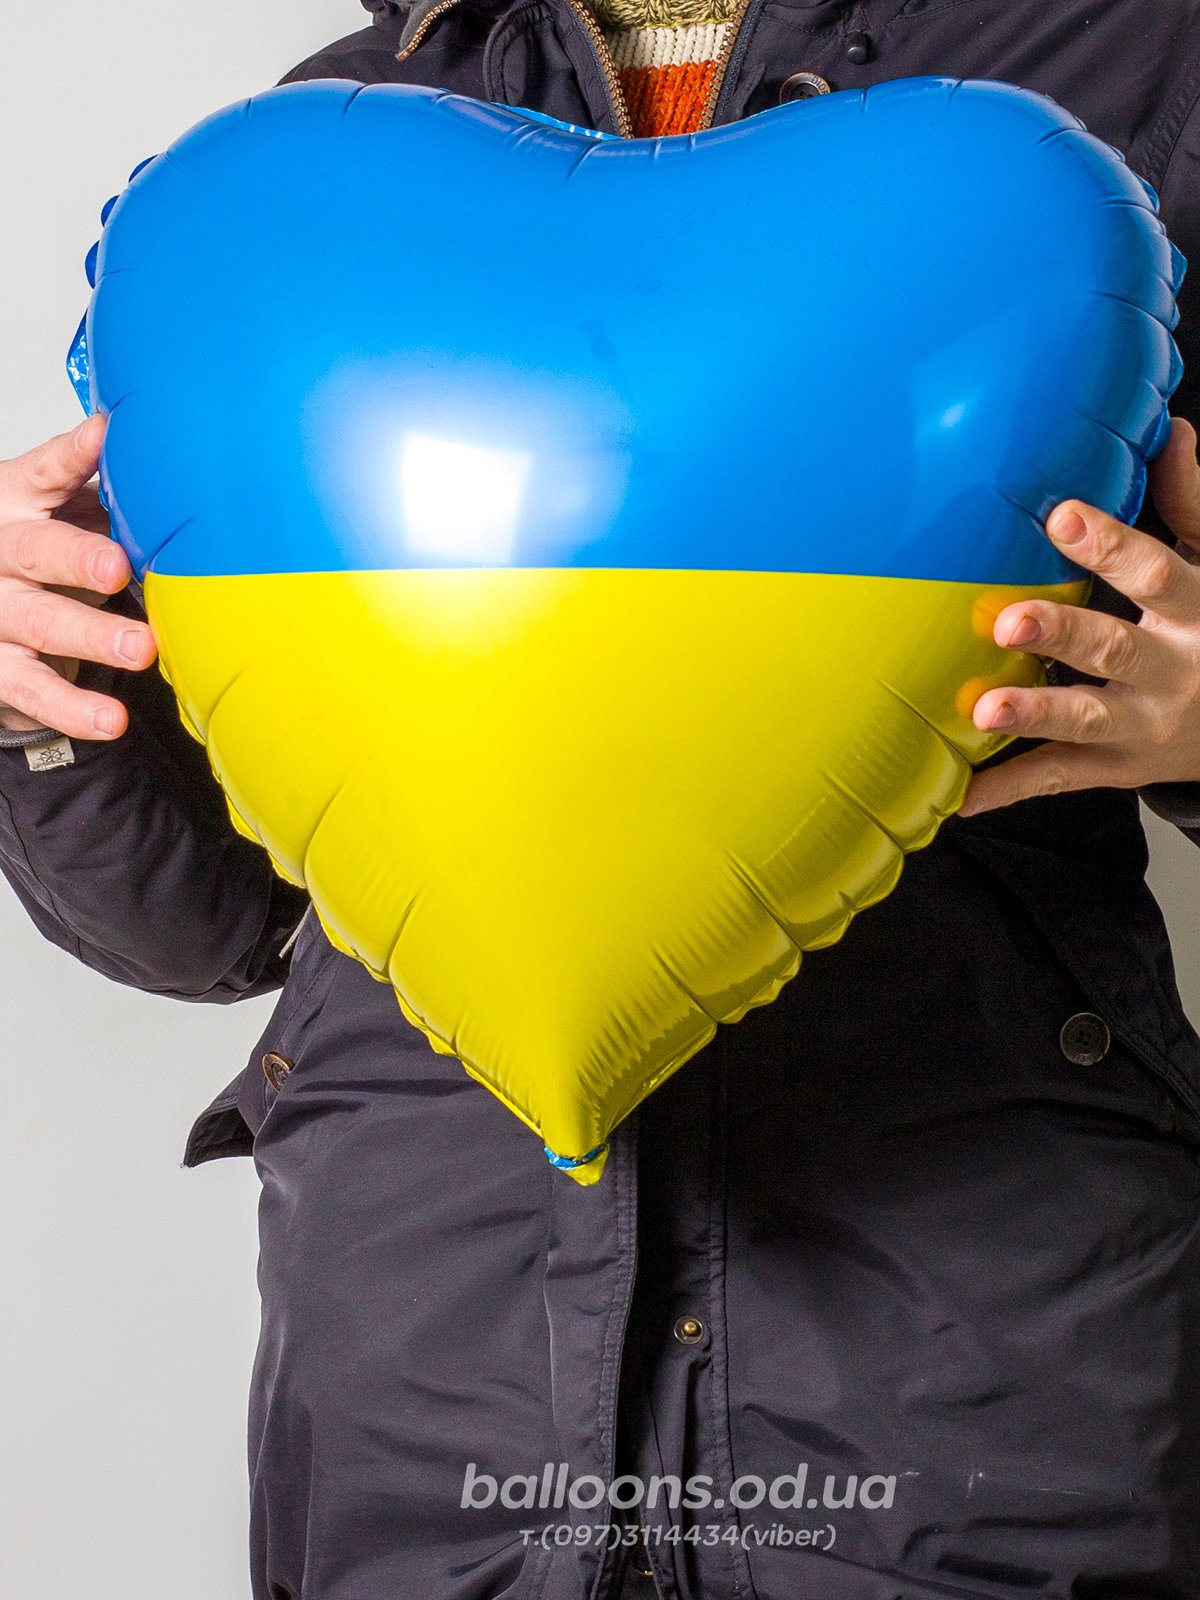 Шарик - сердце с флагом Украины